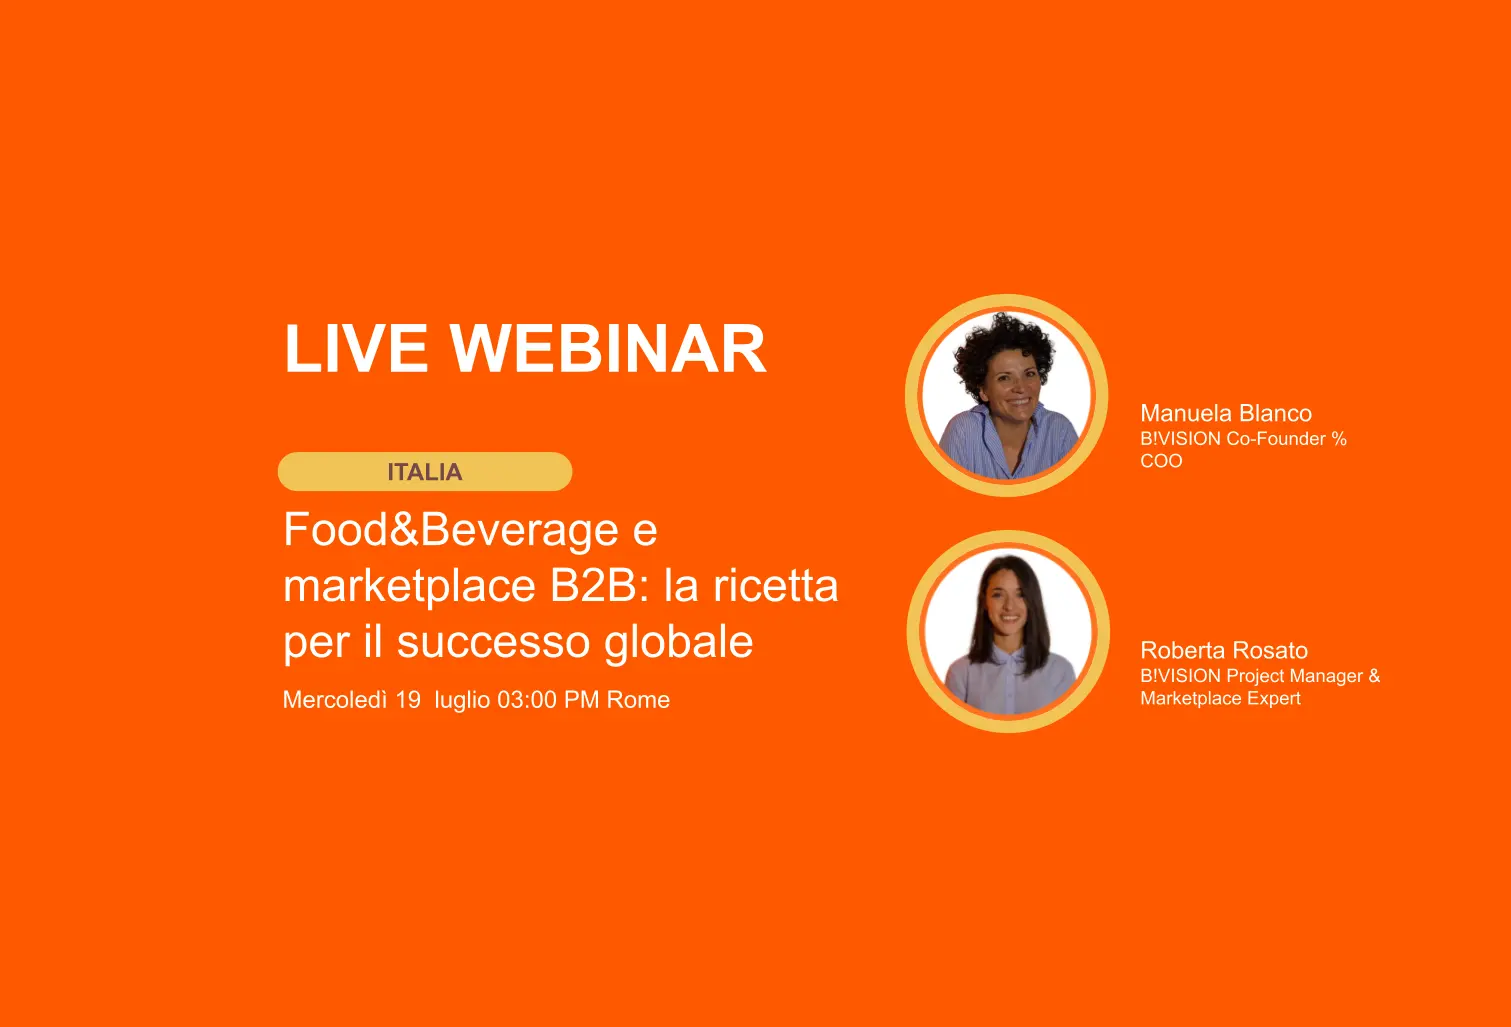 Food&Beverage e marketplace B2B: la ricetta per il successo globale